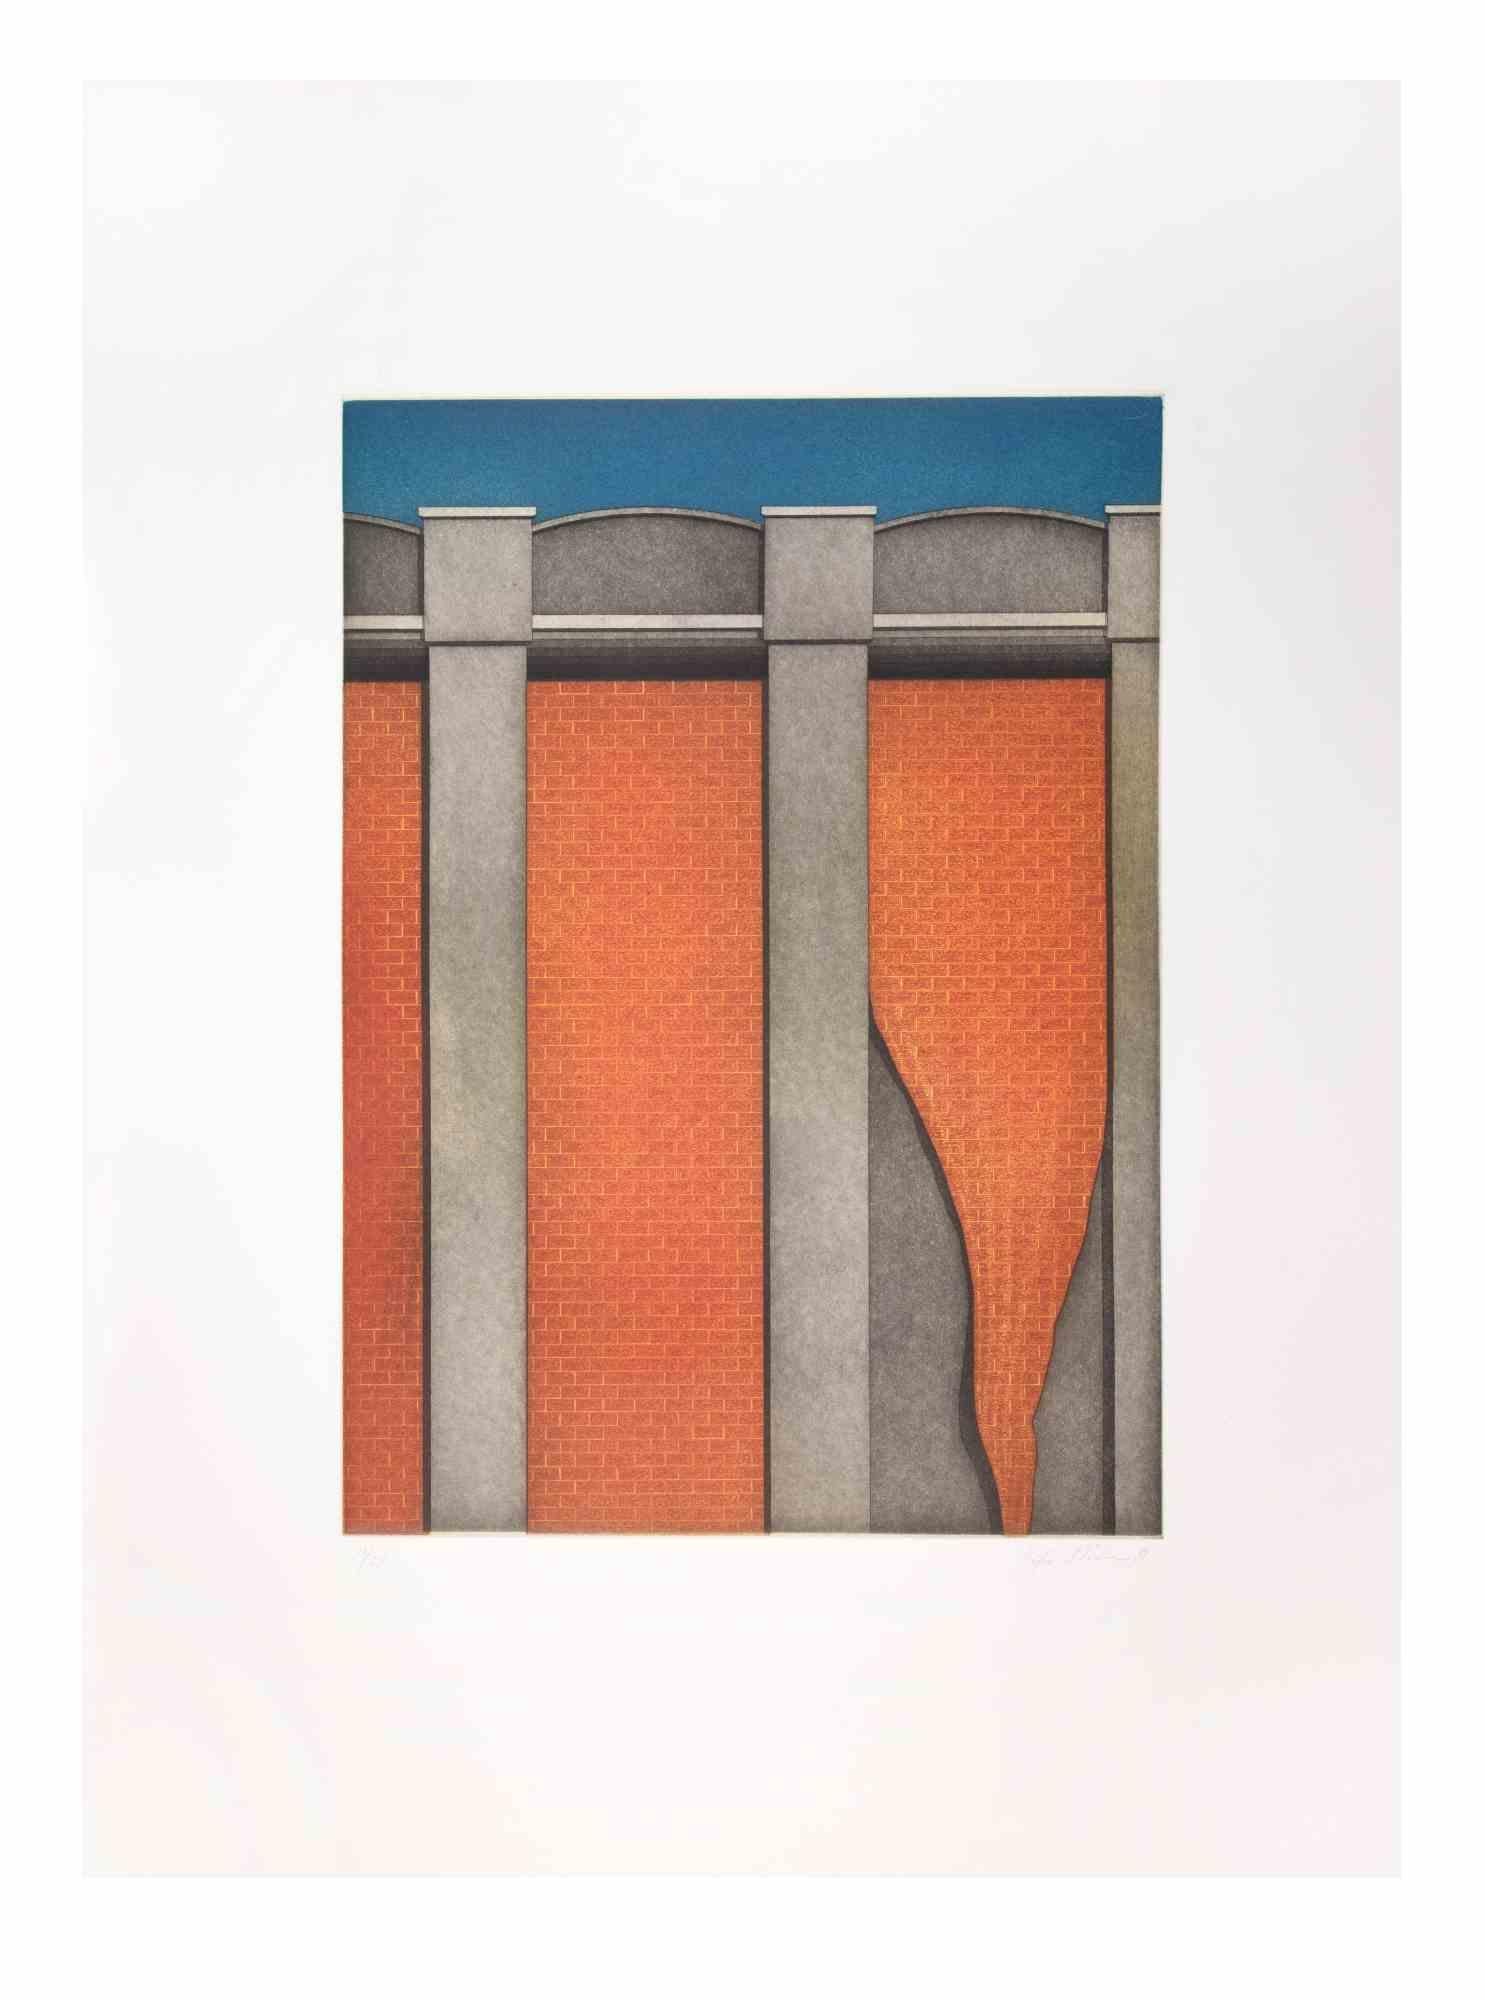 Hangar ist ein zeitgenössisches Kunstwerk des Künstlers Fifo Stricker aus dem Jahr 1981.

Gemischte farbige Aquatinta und Radierung.

Handsigniert und nummeriert.

Ausgabe 17/25.